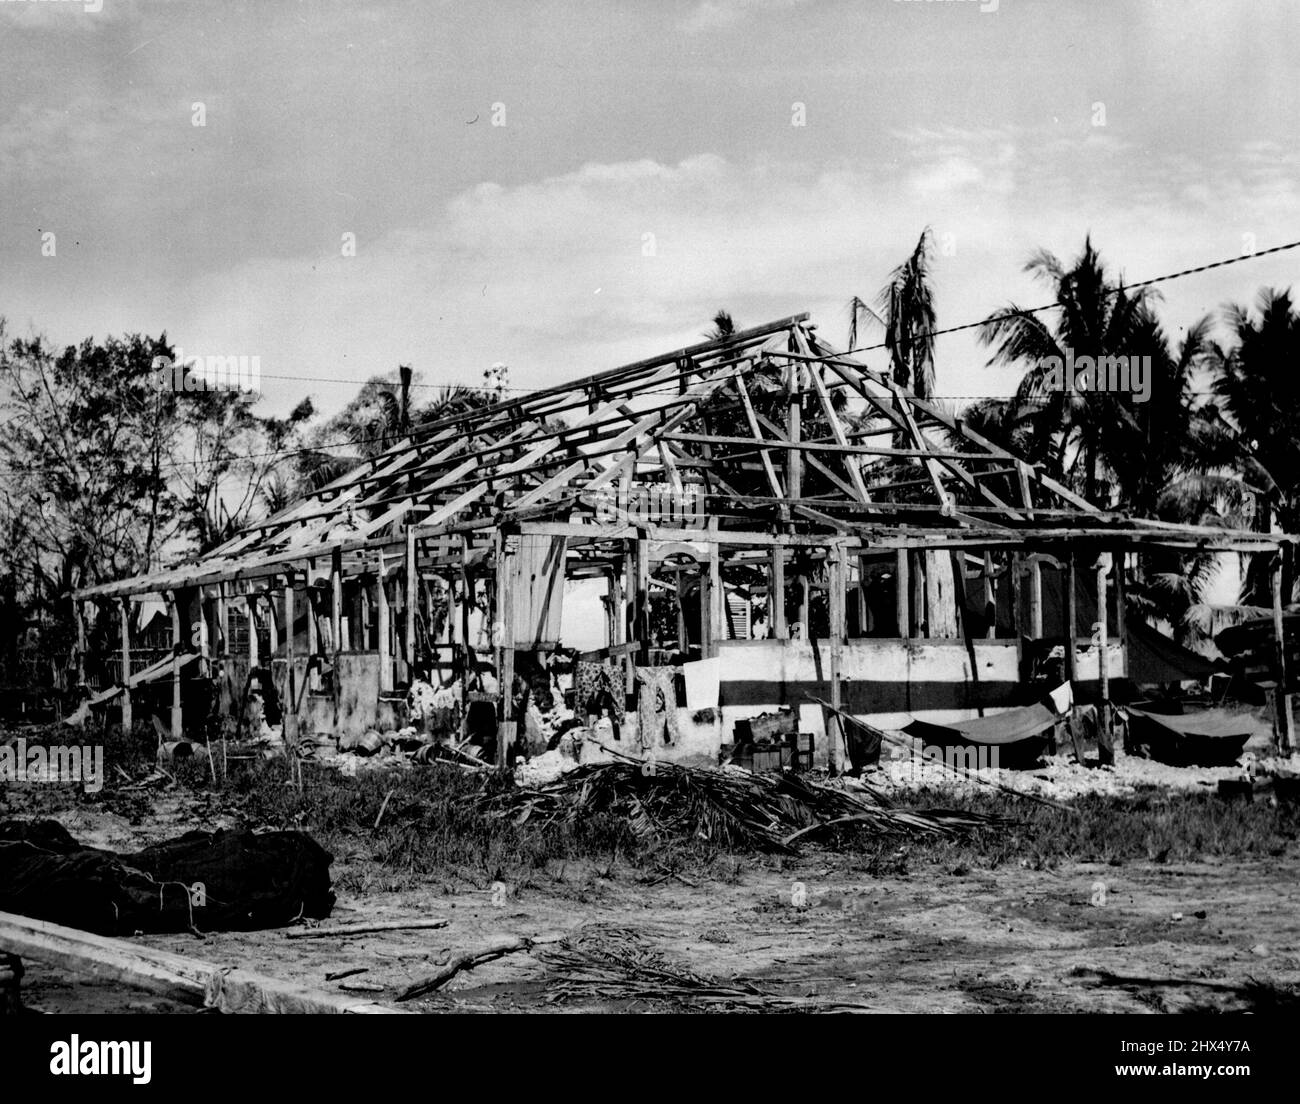 US-Truppen nutzen Mission - ein altes niederländisches Missionshaus, das die Japaner vor der Ankunft amerikanischer Truppen auf der Insel Bink, Niederländisch-Neuguinea, angeeignet hatten. Trotz des schweren Schadens, der durch die Bombardierung der Alliierten verursacht wurde, konnten US-Soldaten die Vermissten nutzen. 17. Juli 1944. (Foto von USA Signal Corps). Stockfoto